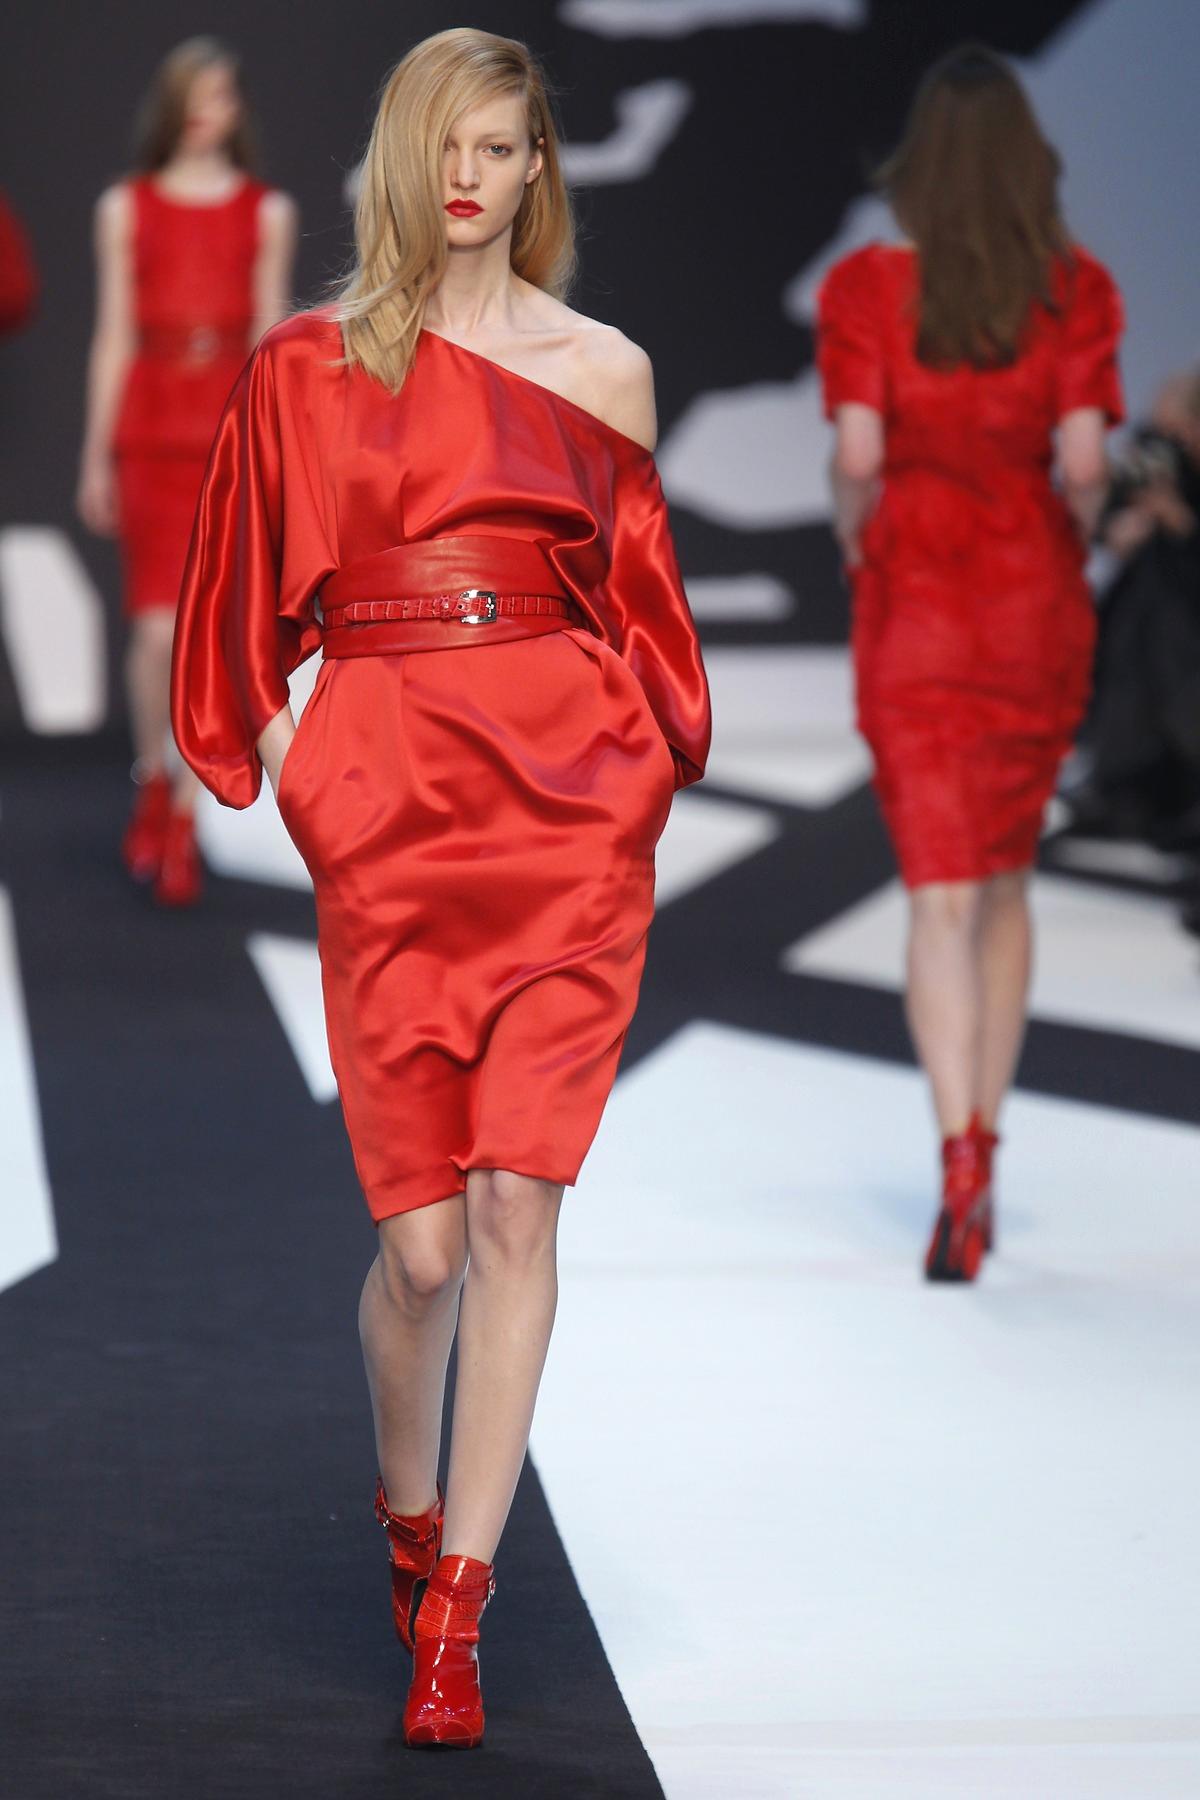 LADY IN RED Rött, rött, rött i varma toner på Guy Laroches ready to wear-höstvisning i Paris.